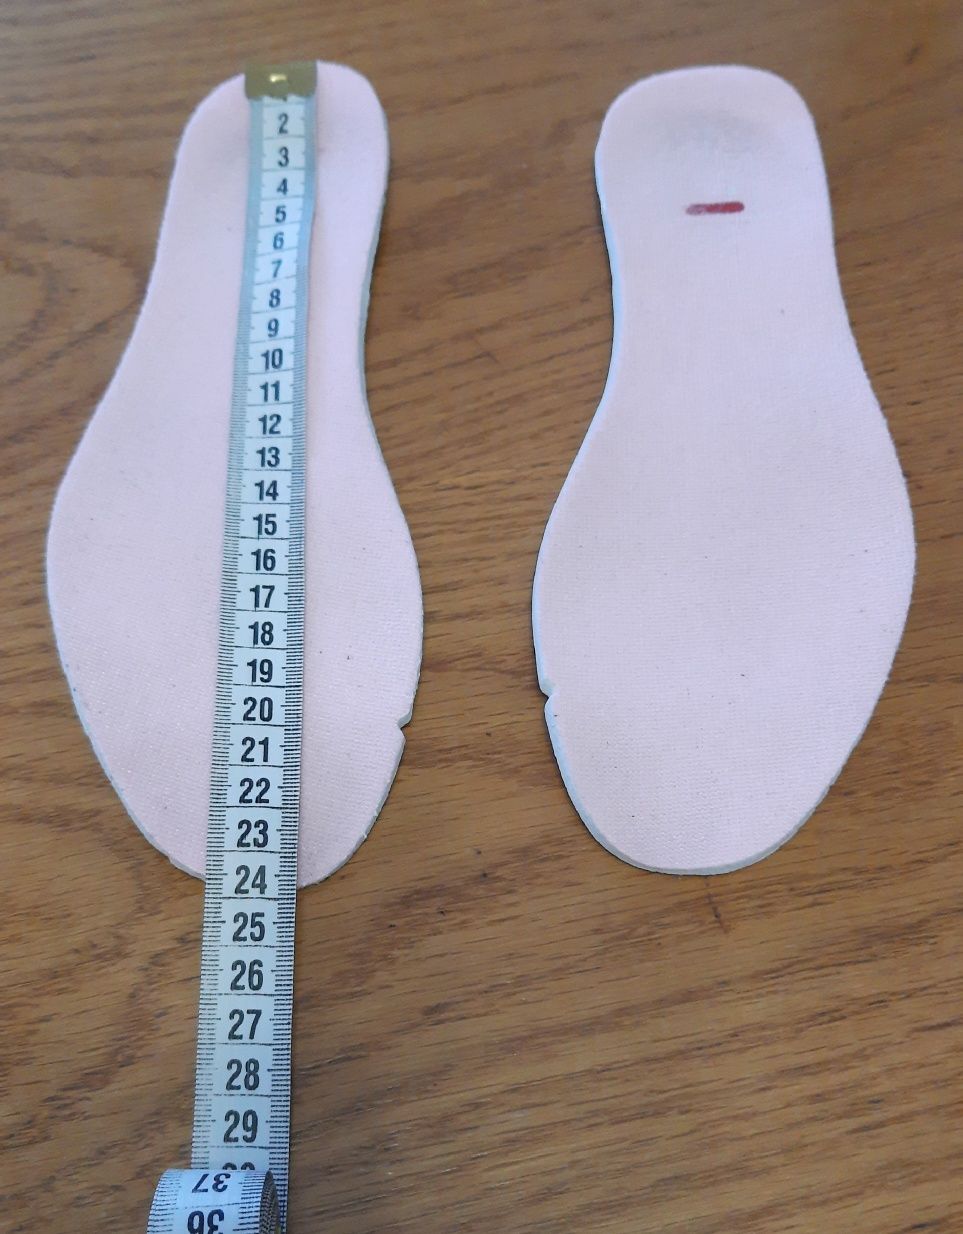 Кросівки FILA Disruptor 2 Pink (розмір 37/23.5см) в ідеальному стані